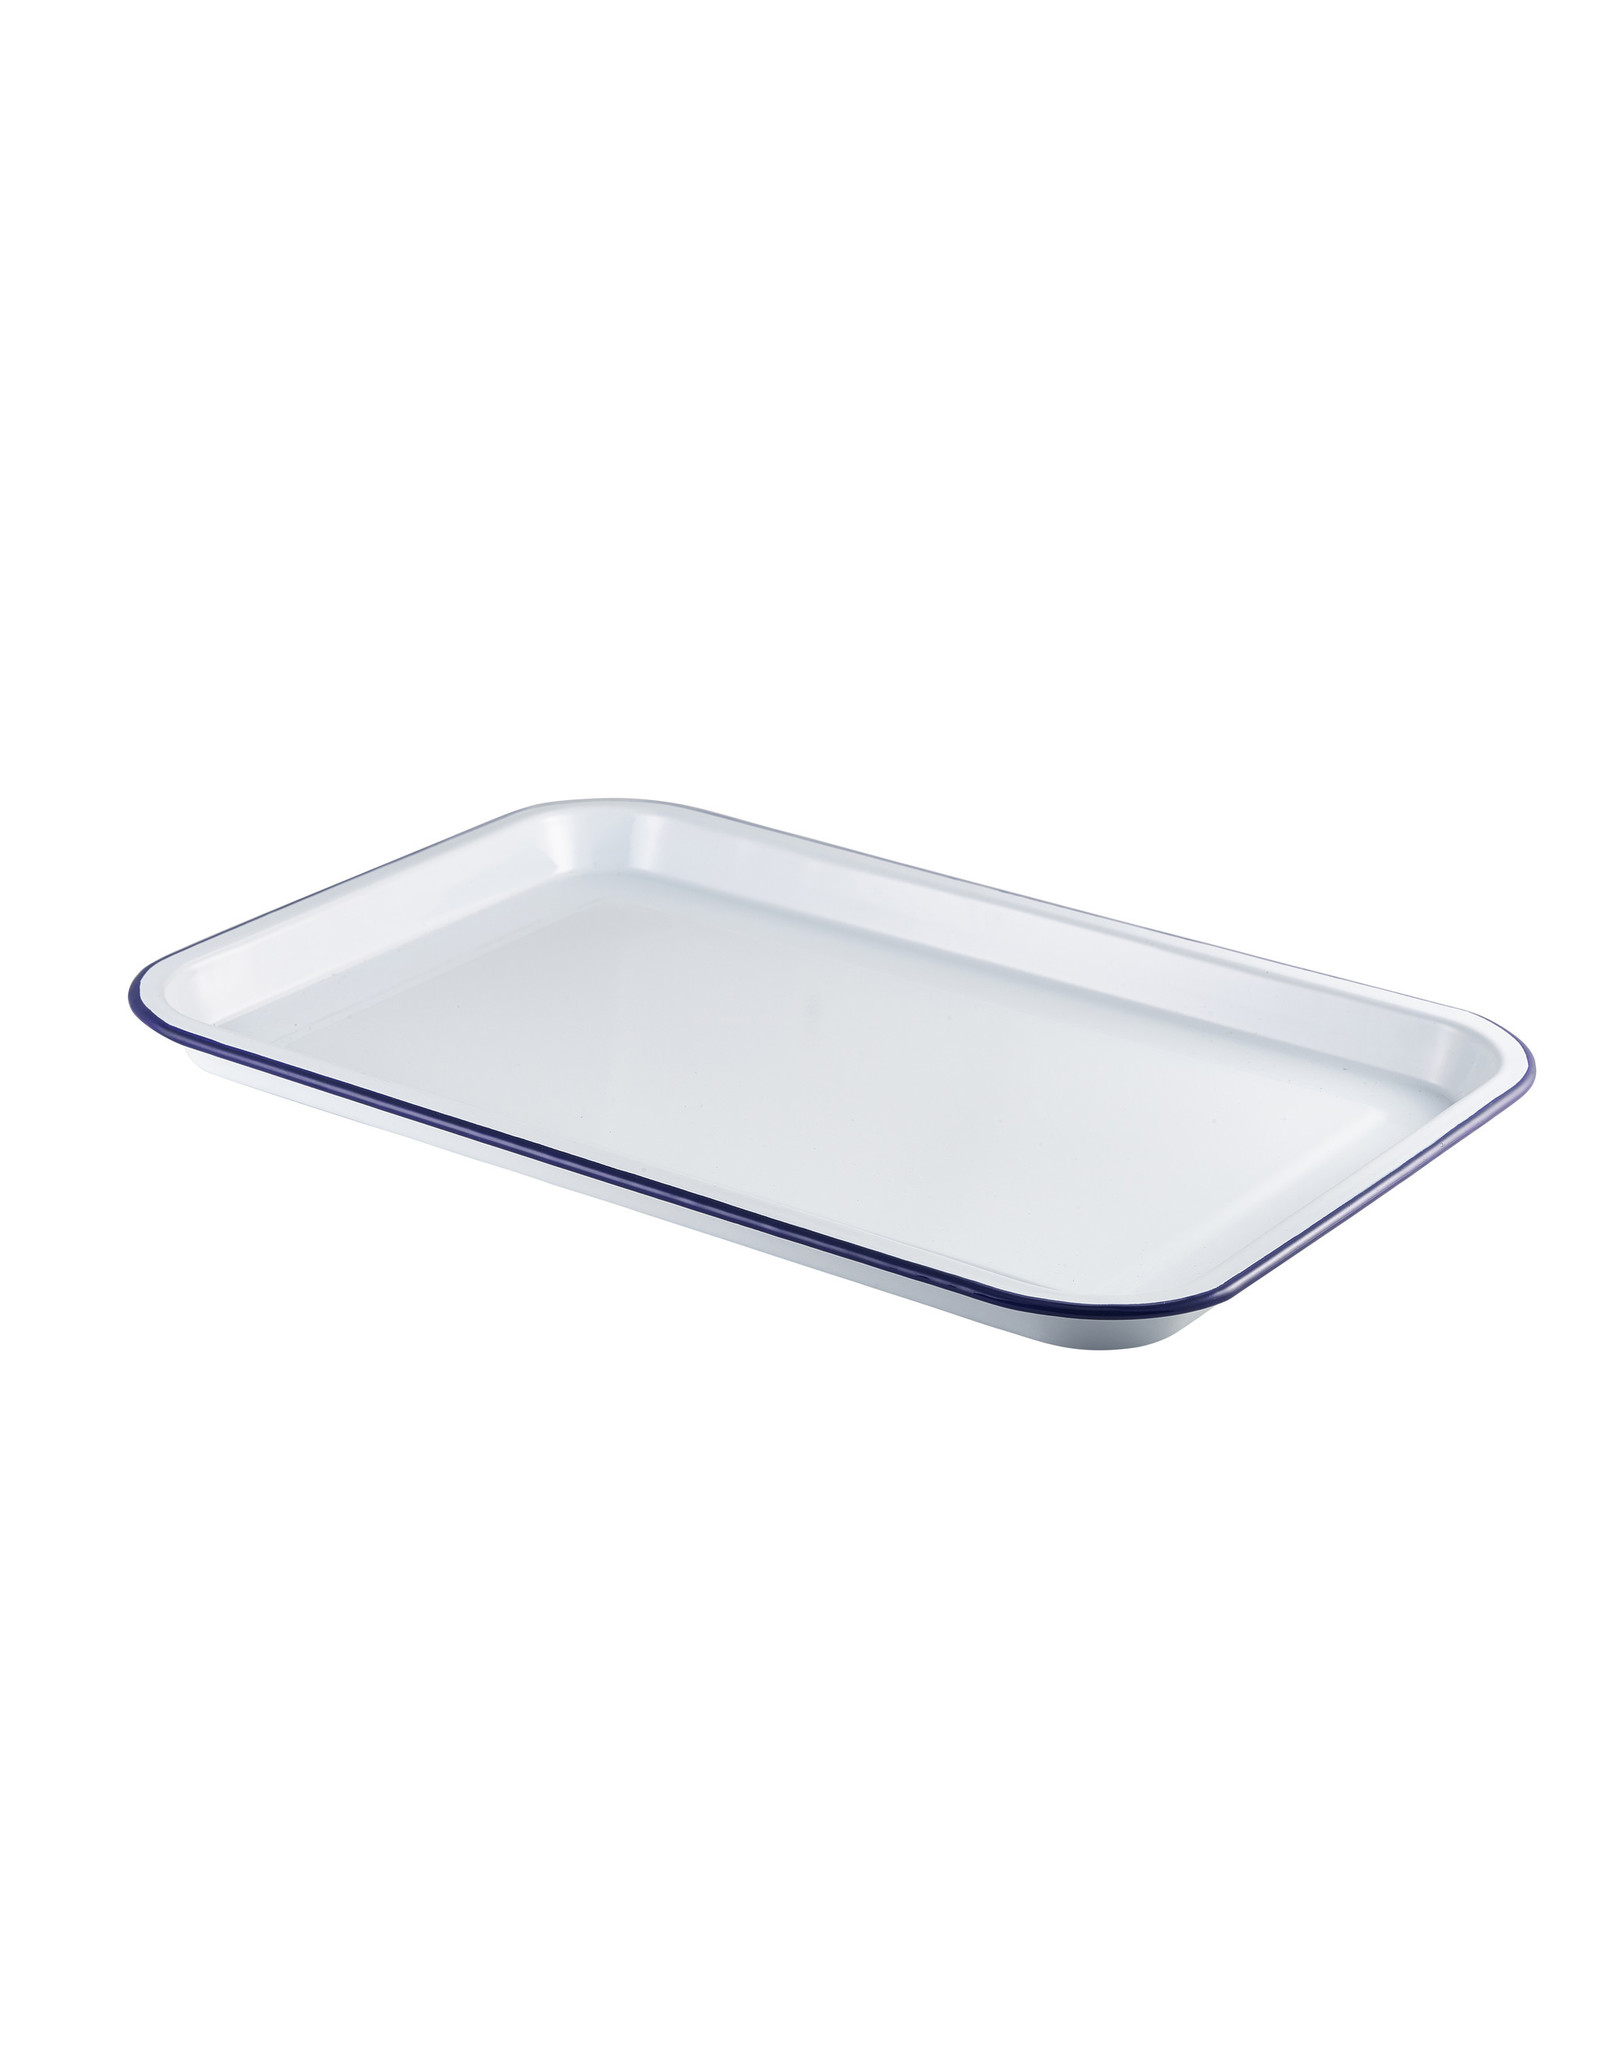 Stylepoint Enamel food platter white/blue 30,5 x 23,5 cm